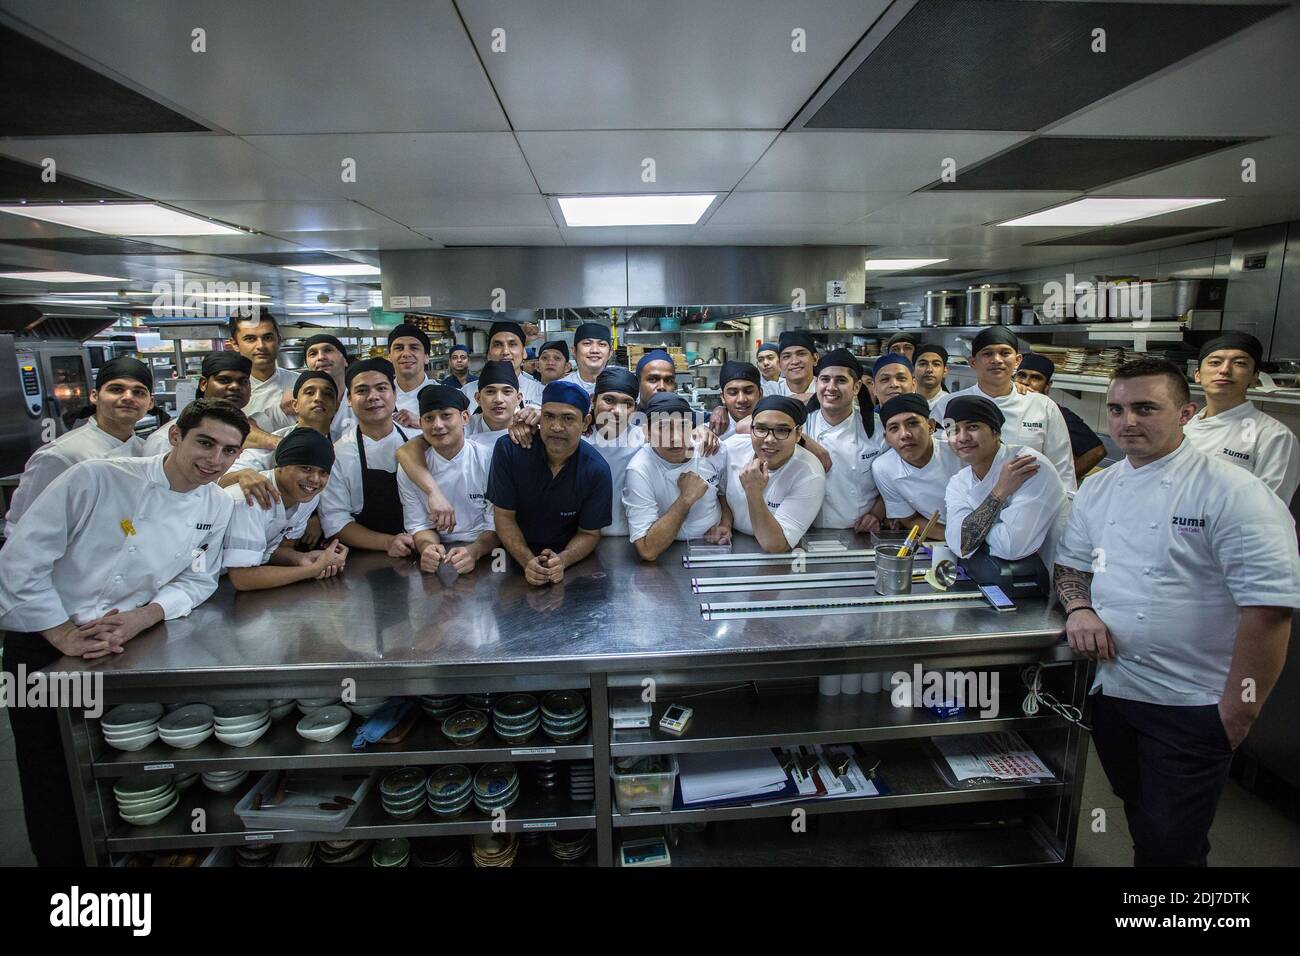 Erfolgreiches multinationales Team von Restaurantmitarbeitern, die professionell zusammenstehen Küche in Dubai, Vereinigte Arabische Emirate Stockfoto